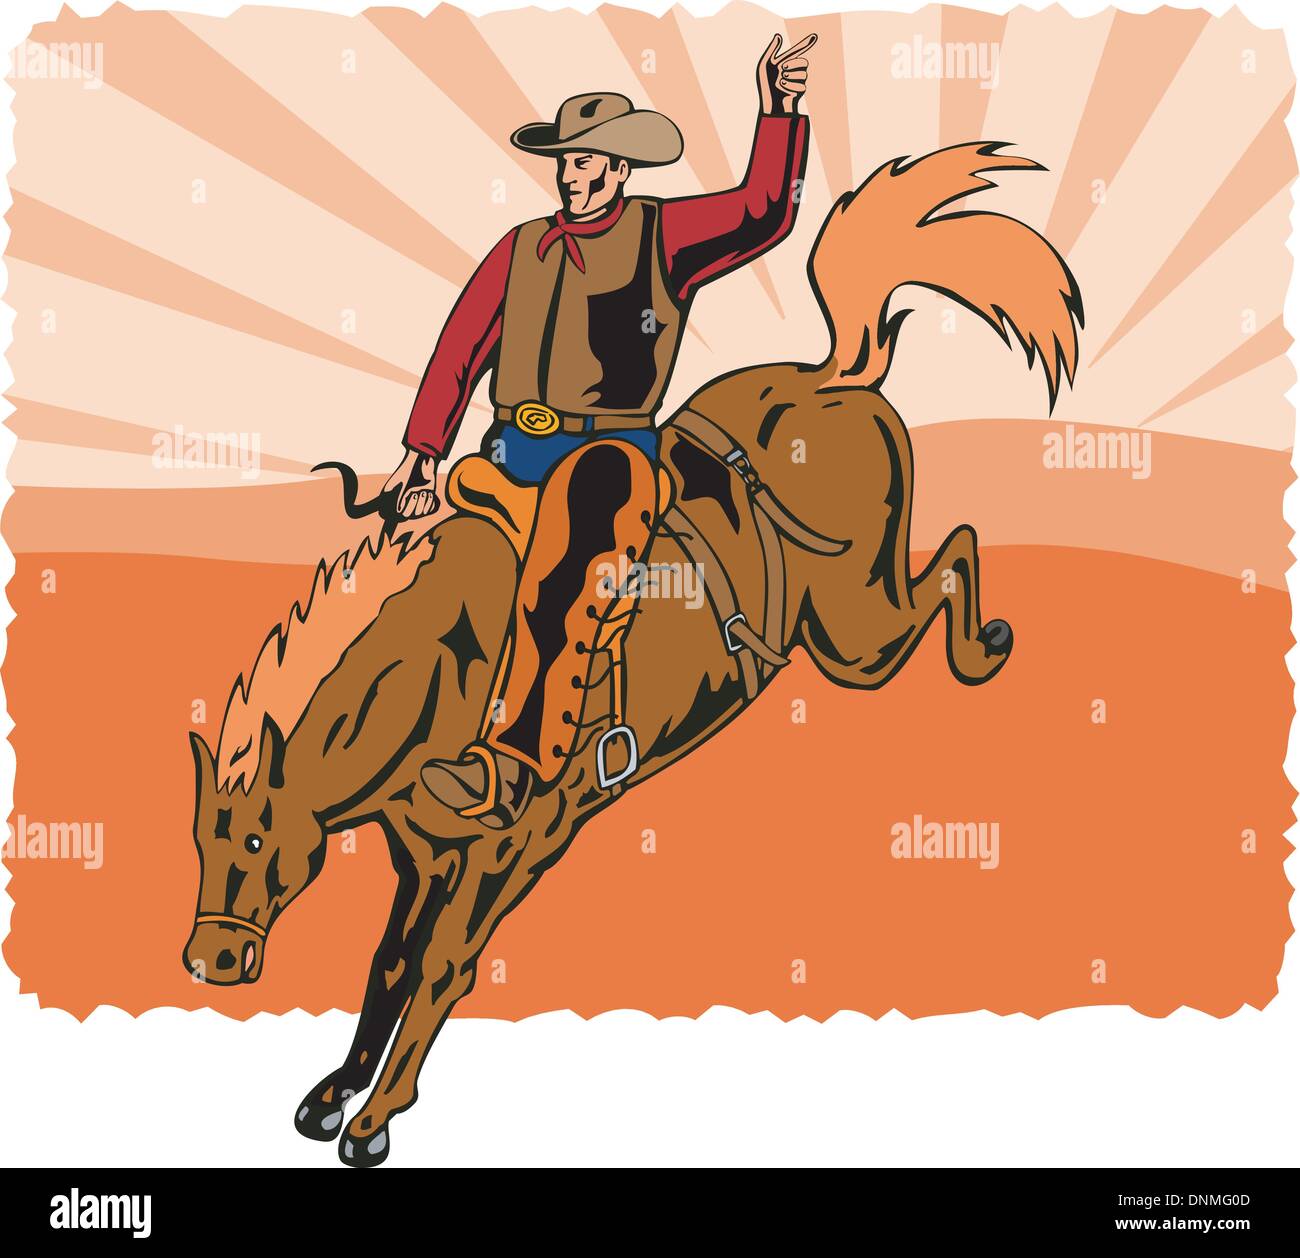 Illustration von Rodeo Cowboy Reiten Springreiten im retro-Stil gemacht. Stock Vektor